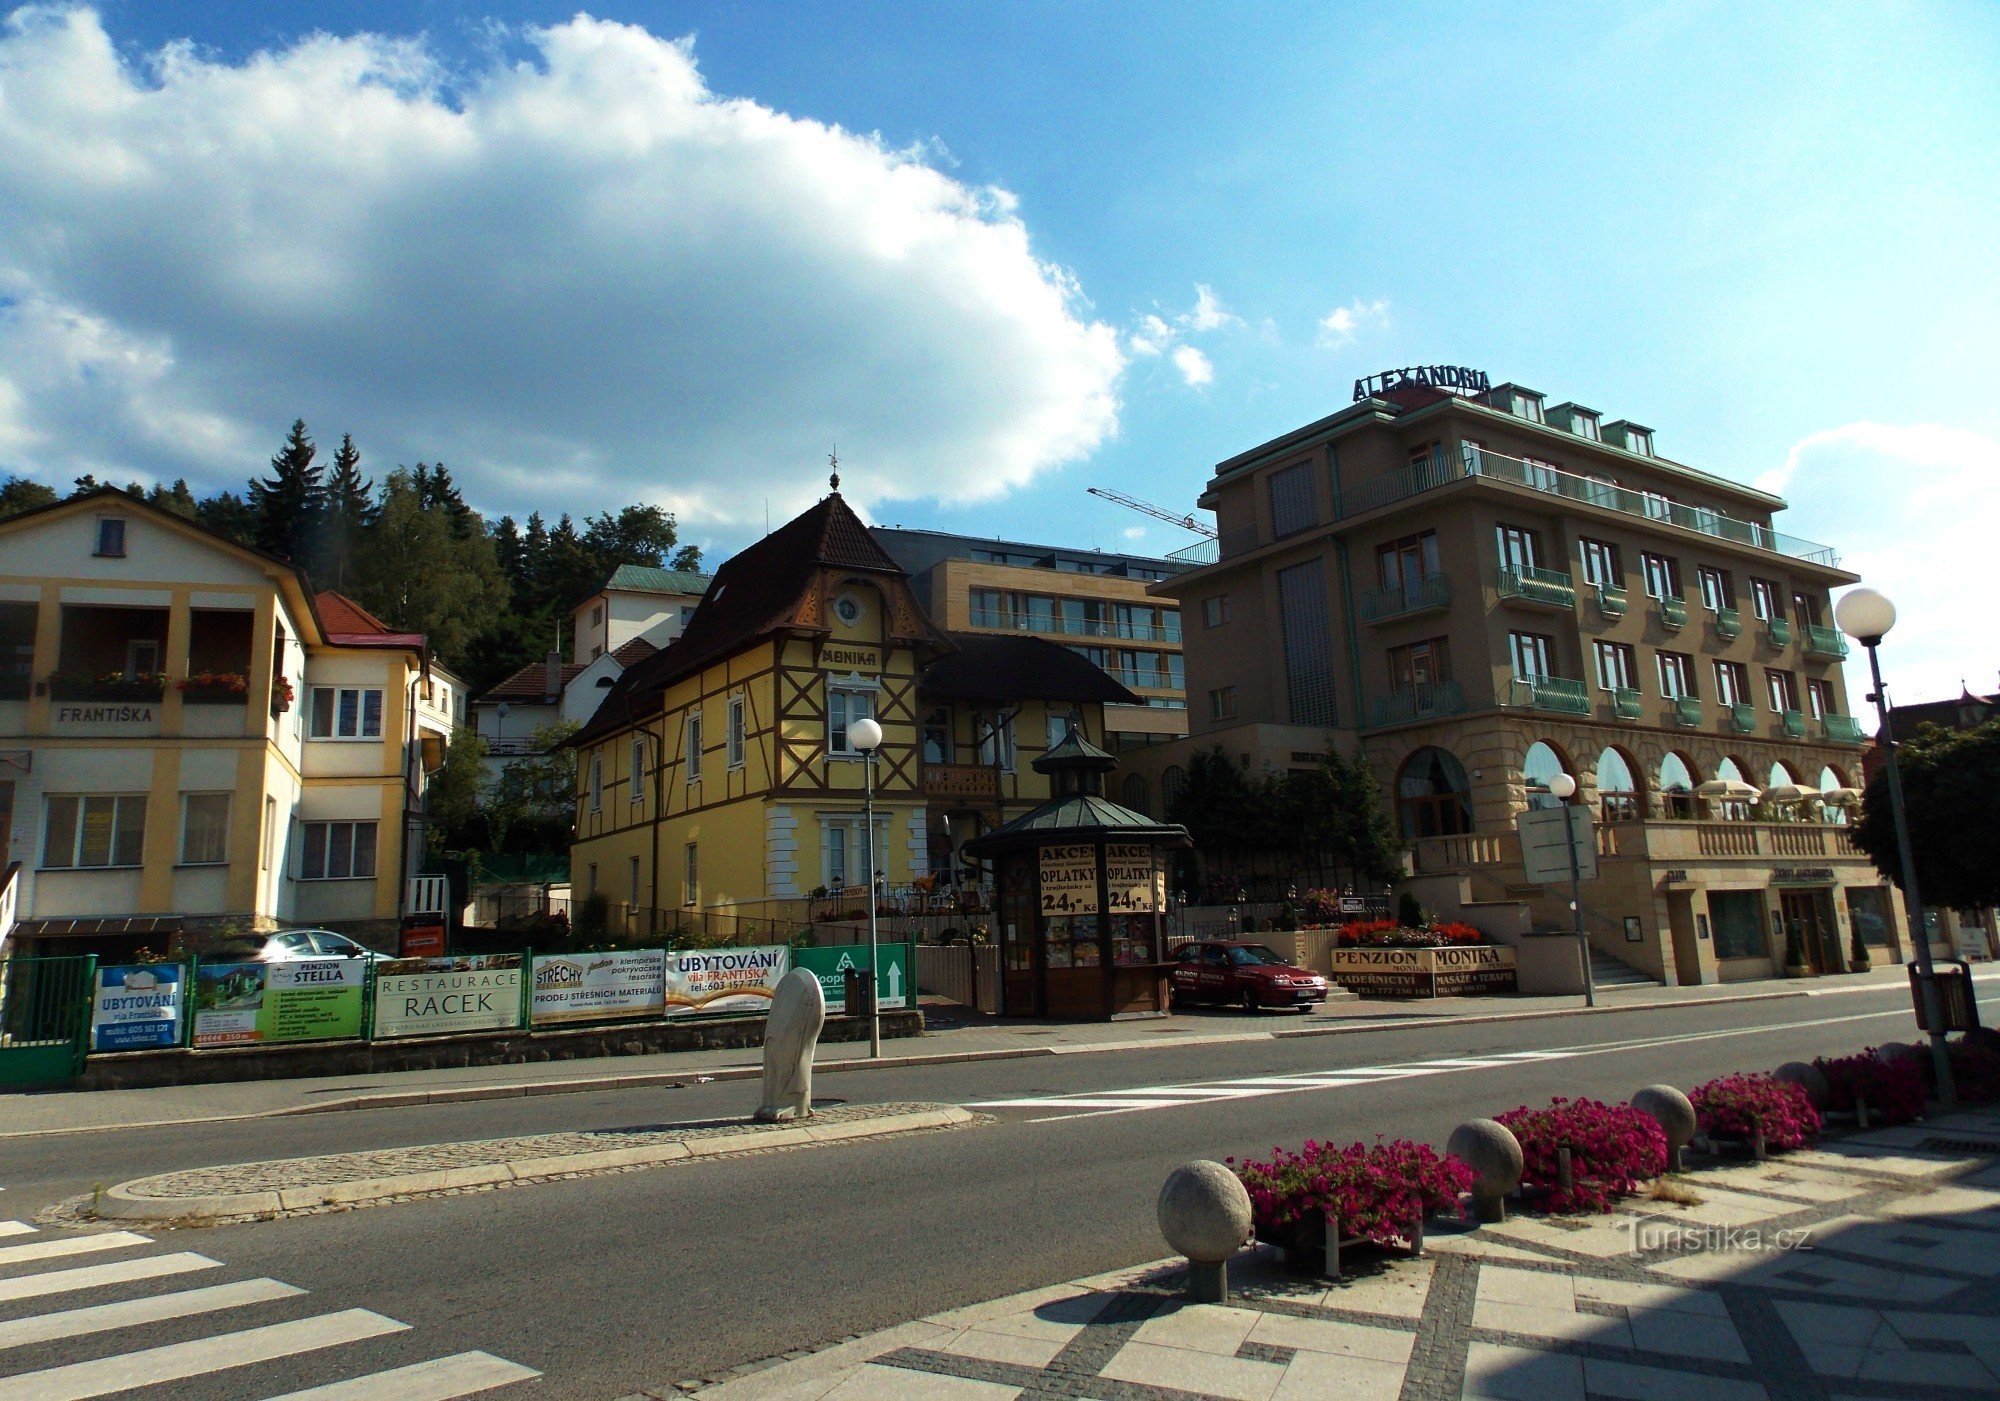 前往 Luhačovice 的 Monika 旅馆